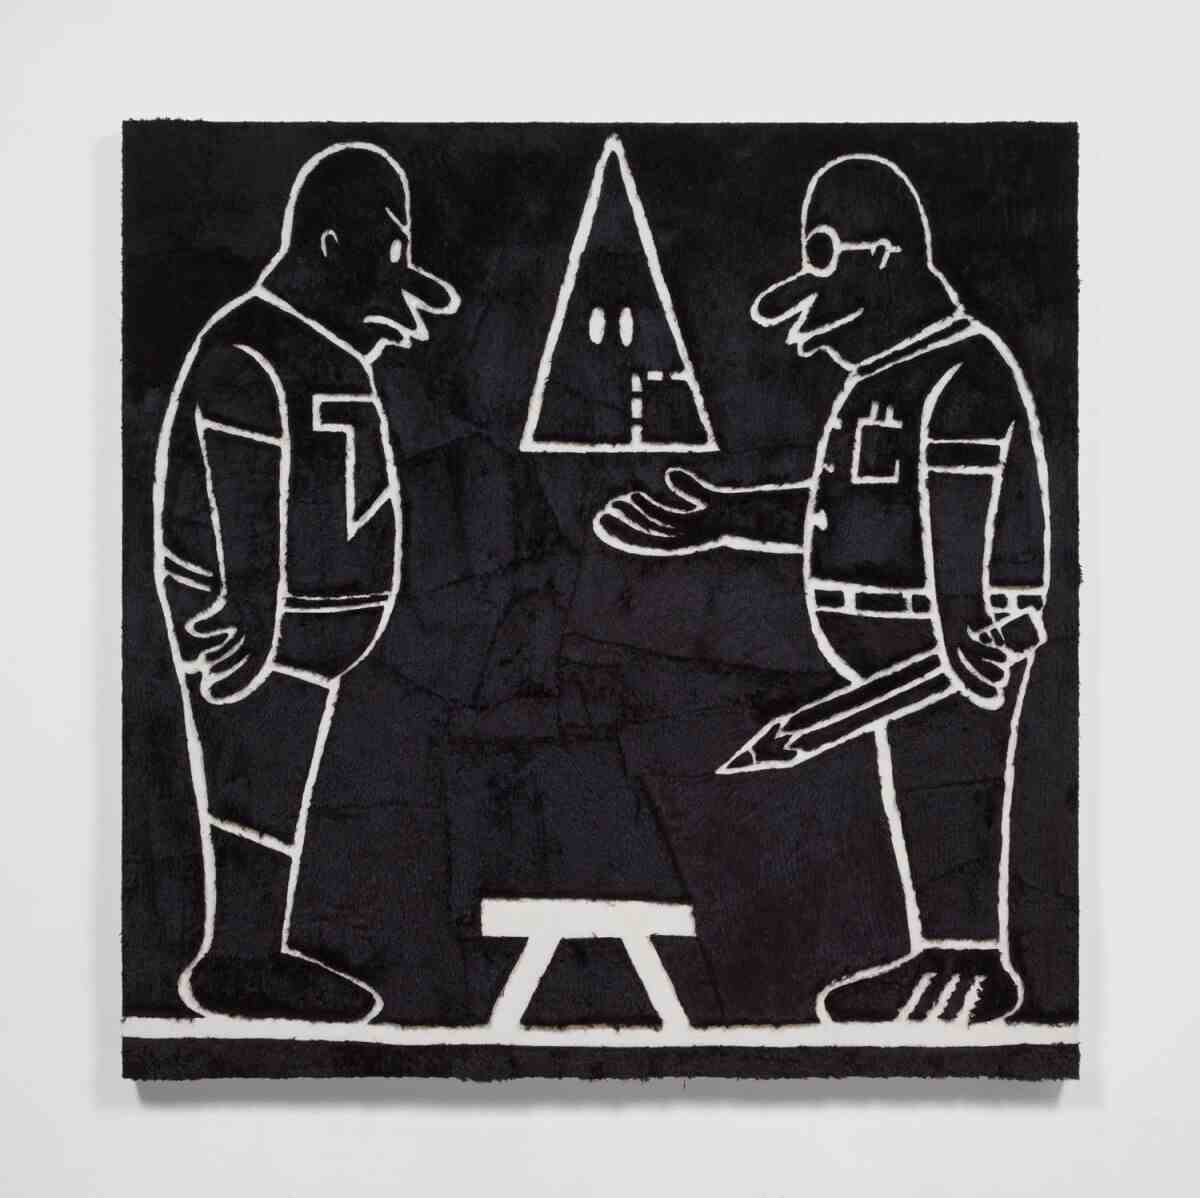 Ein Schwarz-Weiß-Bild mit zwei männlichen Umrissfiguren, die sich gegenüberstehen, dazwischen eine spitze Klan-Kapuze.